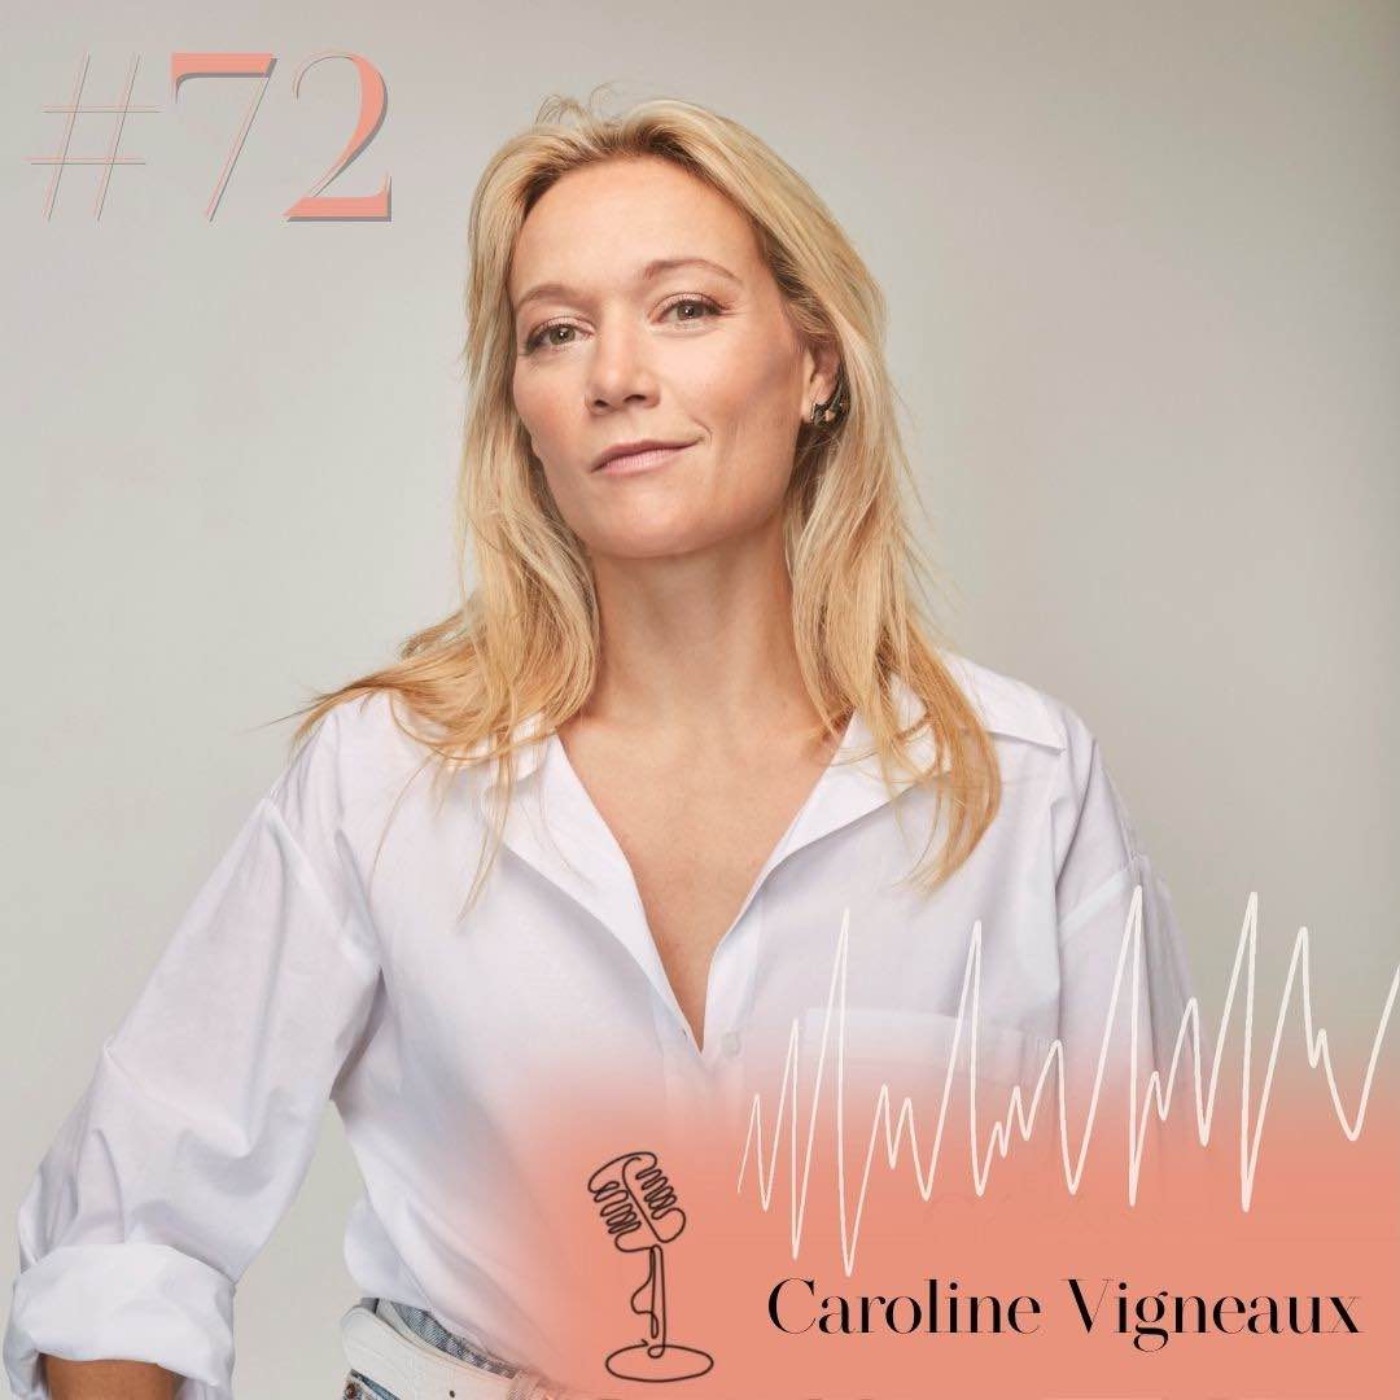 #72 Caroline Vigneaux, d'avocate à humoriste : réussir sa reconversion